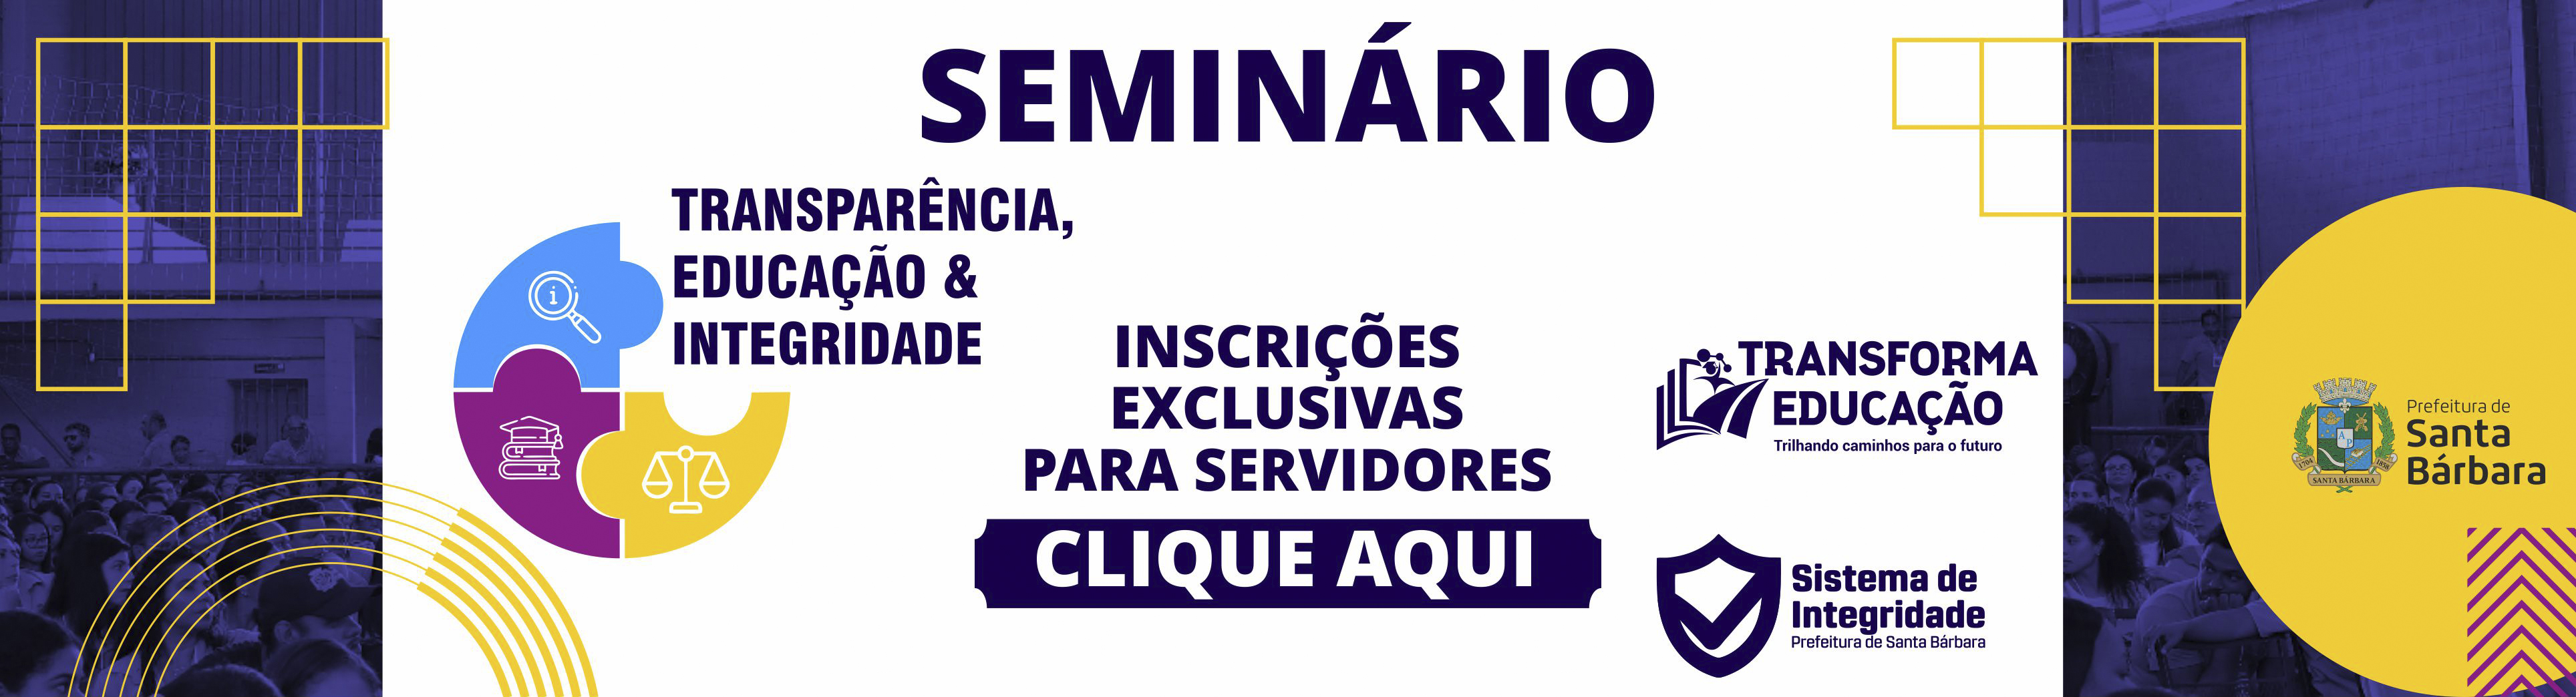 Banner Seminrio